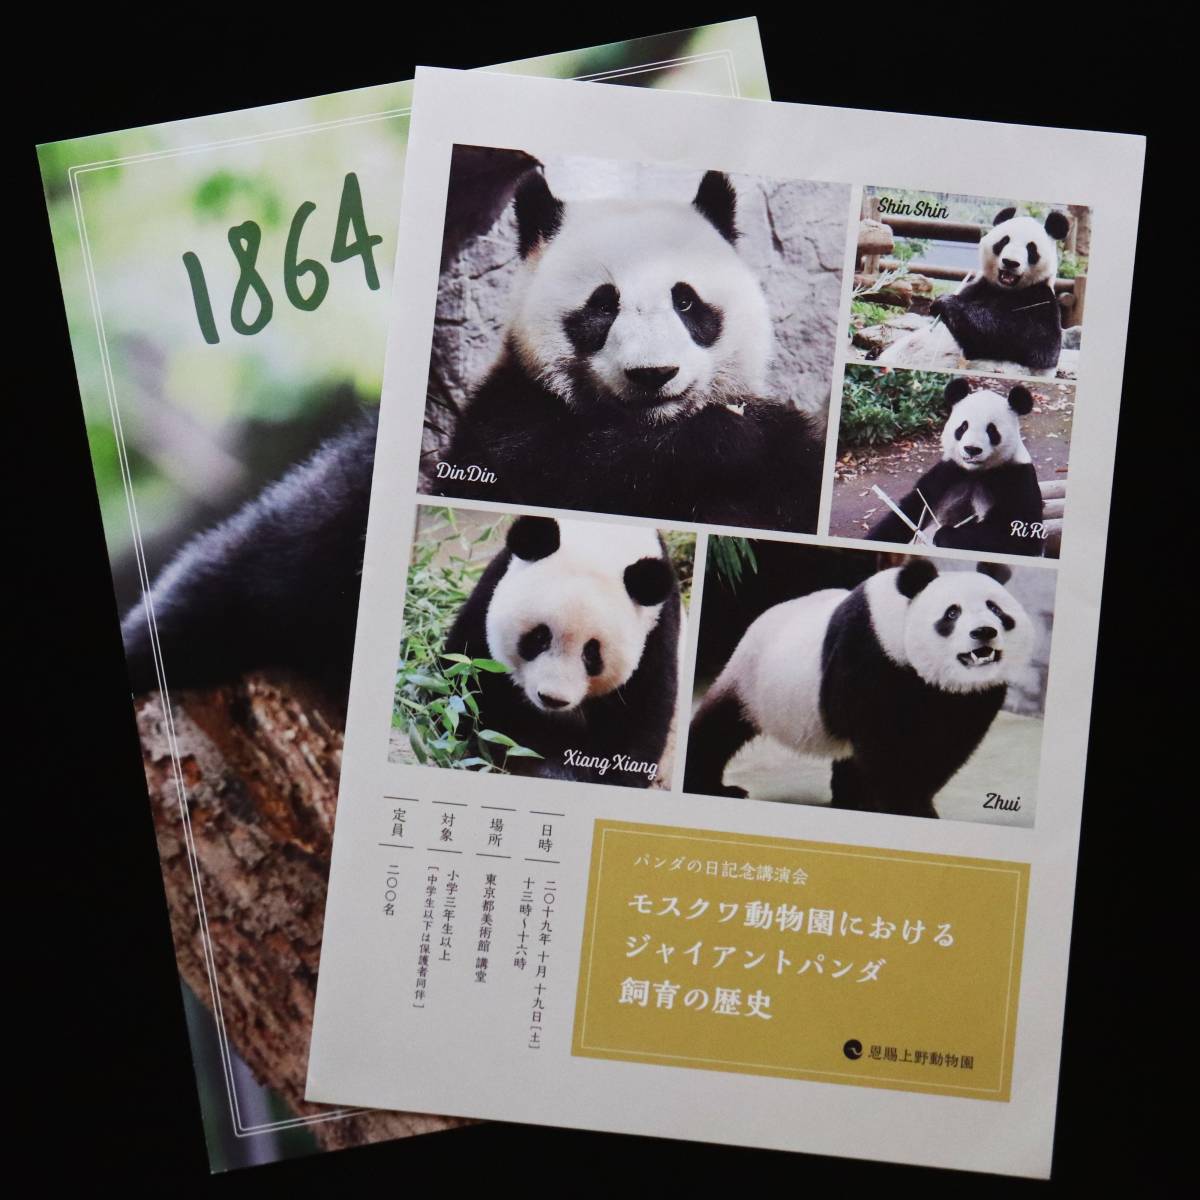 ■2019年 【非売品】 定員200名 パンダの日記念講演会 パンフレット 冊子 2枚 シャンシャン シンシン リーリー 上野動物園 モスクワ動物園